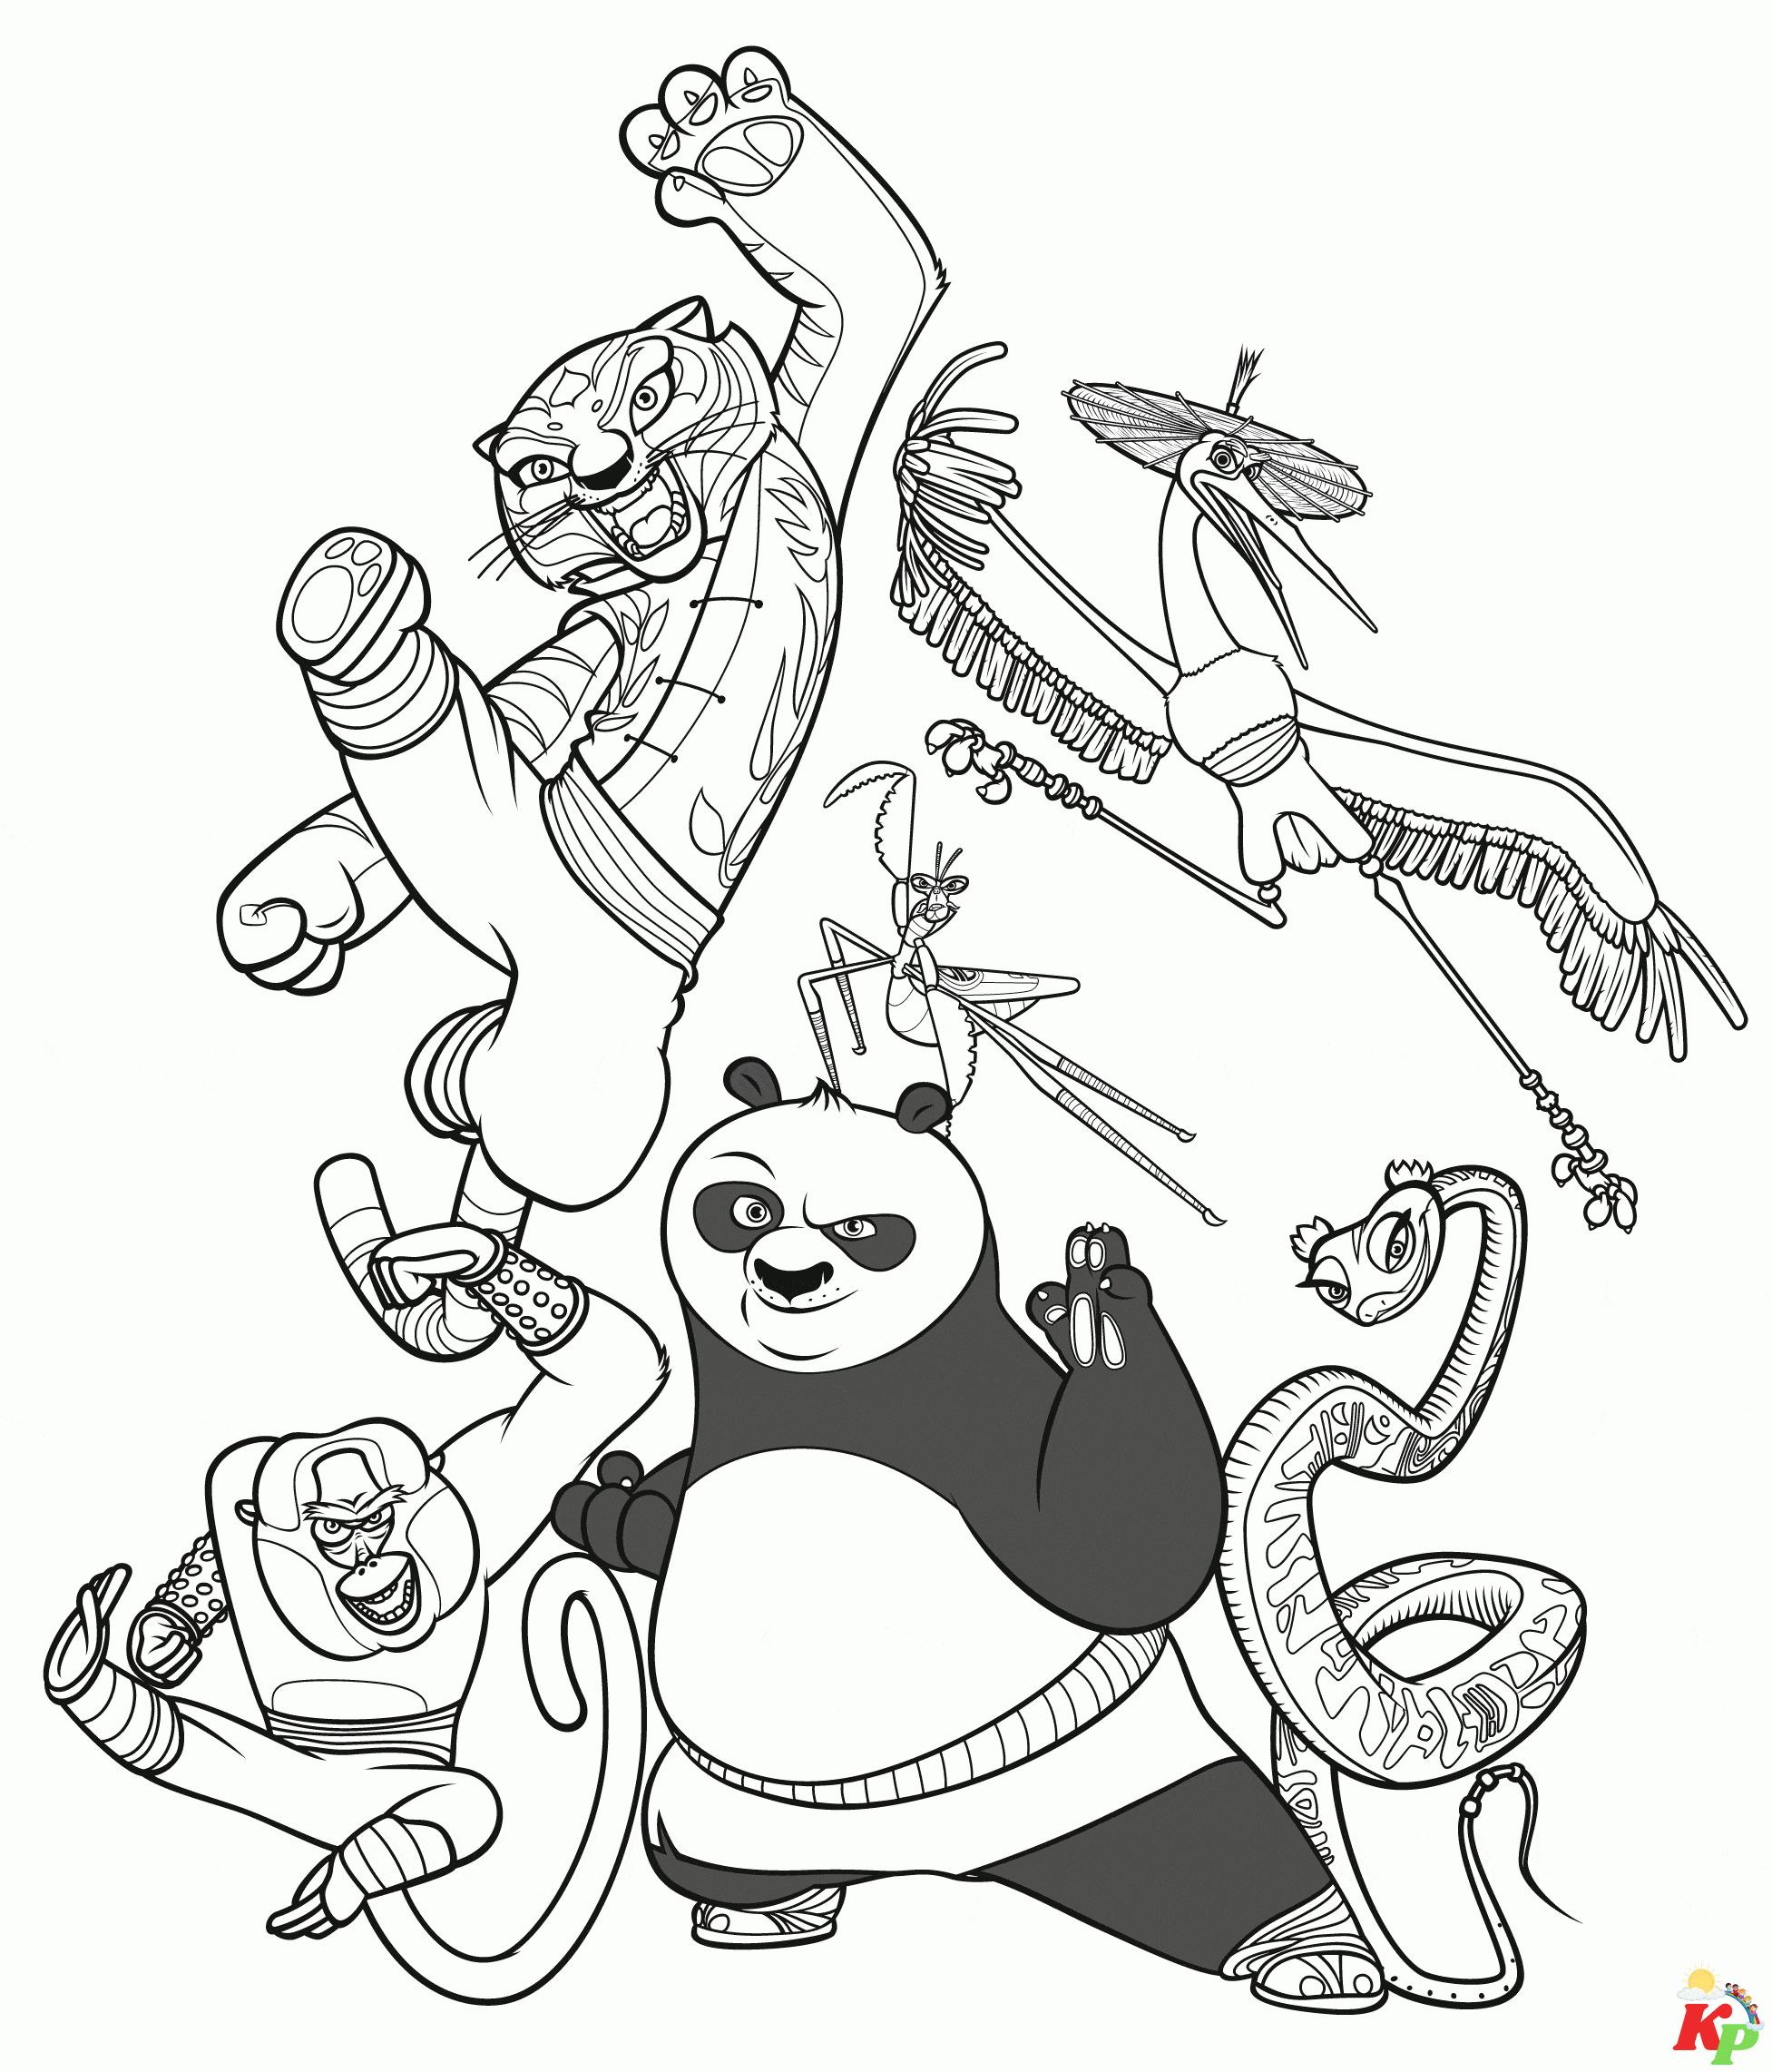 Kung fu Panda03